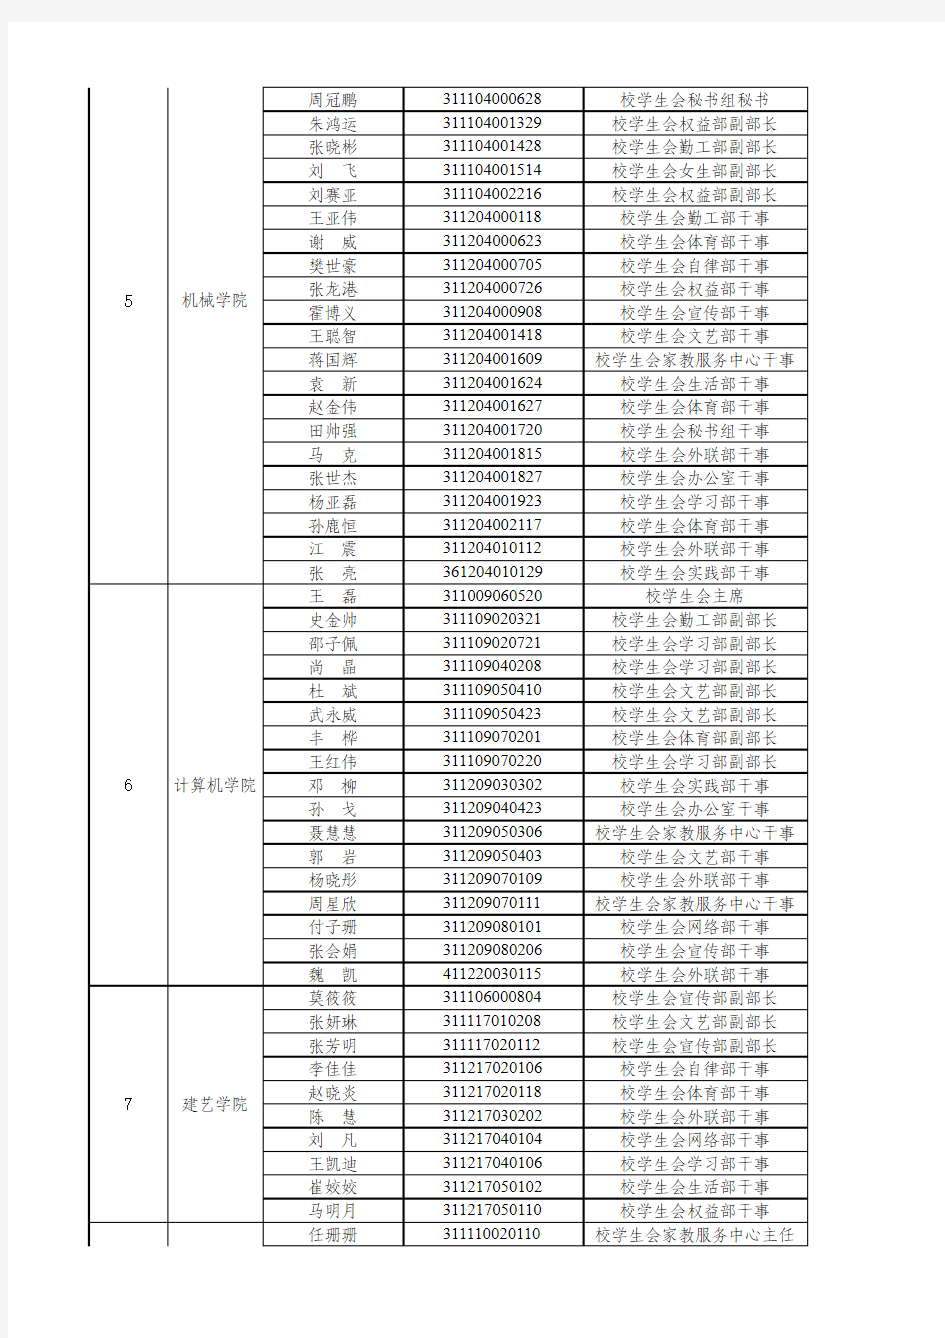 【三】2012-2013学年校级学生干部加分表